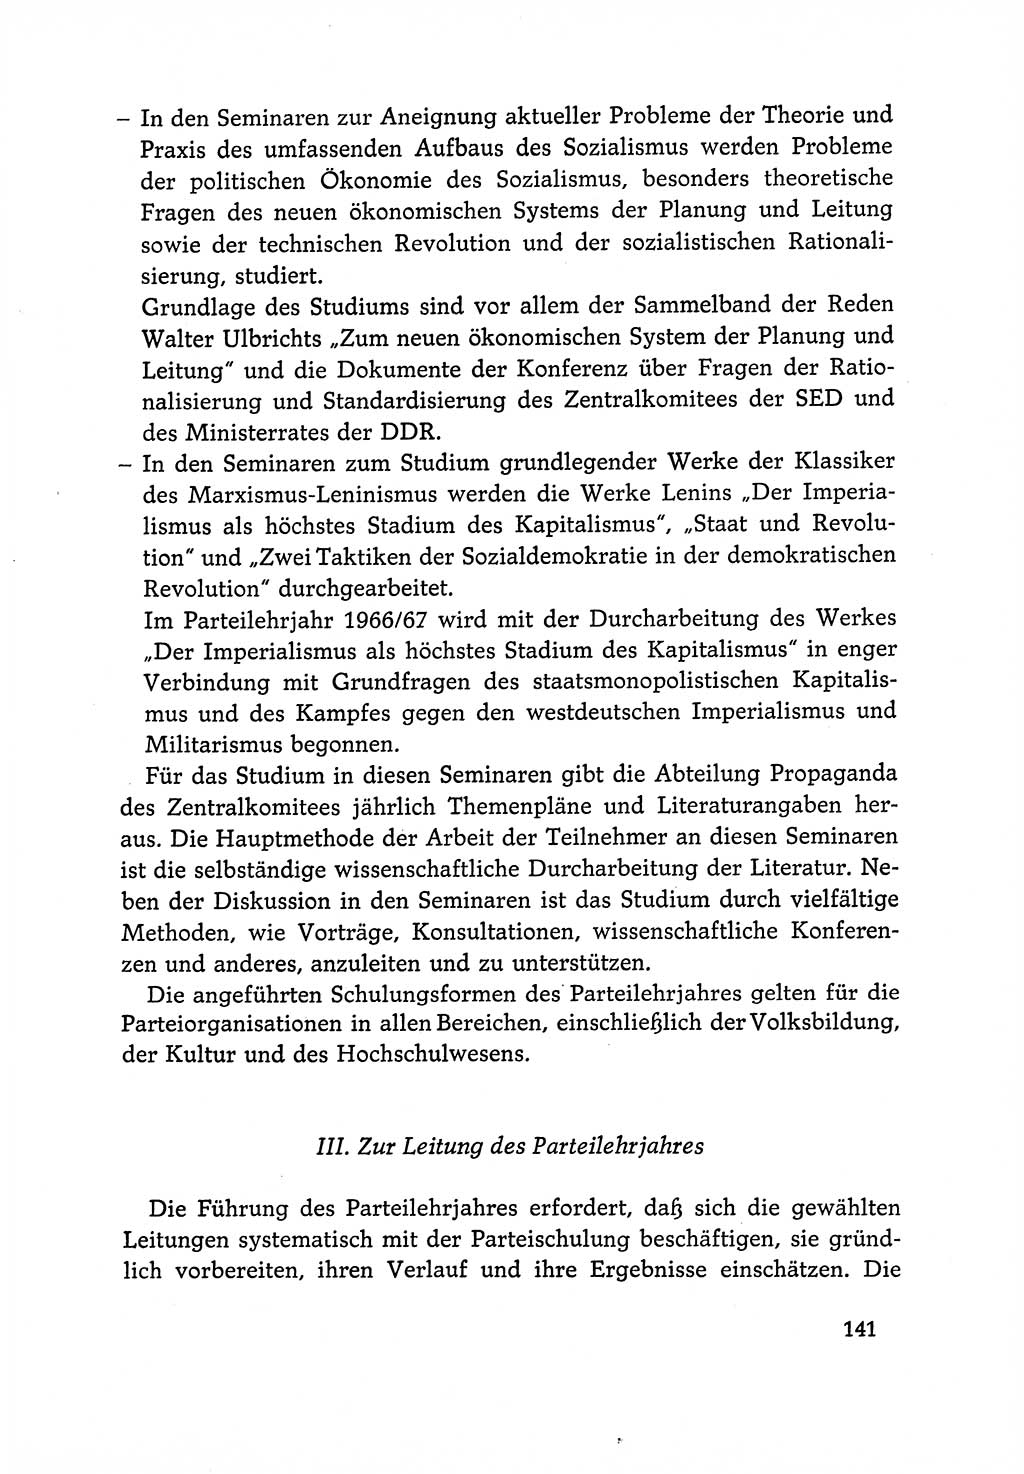 Dokumente der Sozialistischen Einheitspartei Deutschlands (SED) [Deutsche Demokratische Republik (DDR)] 1966-1967, Seite 141 (Dok. SED DDR 1966-1967, S. 141)